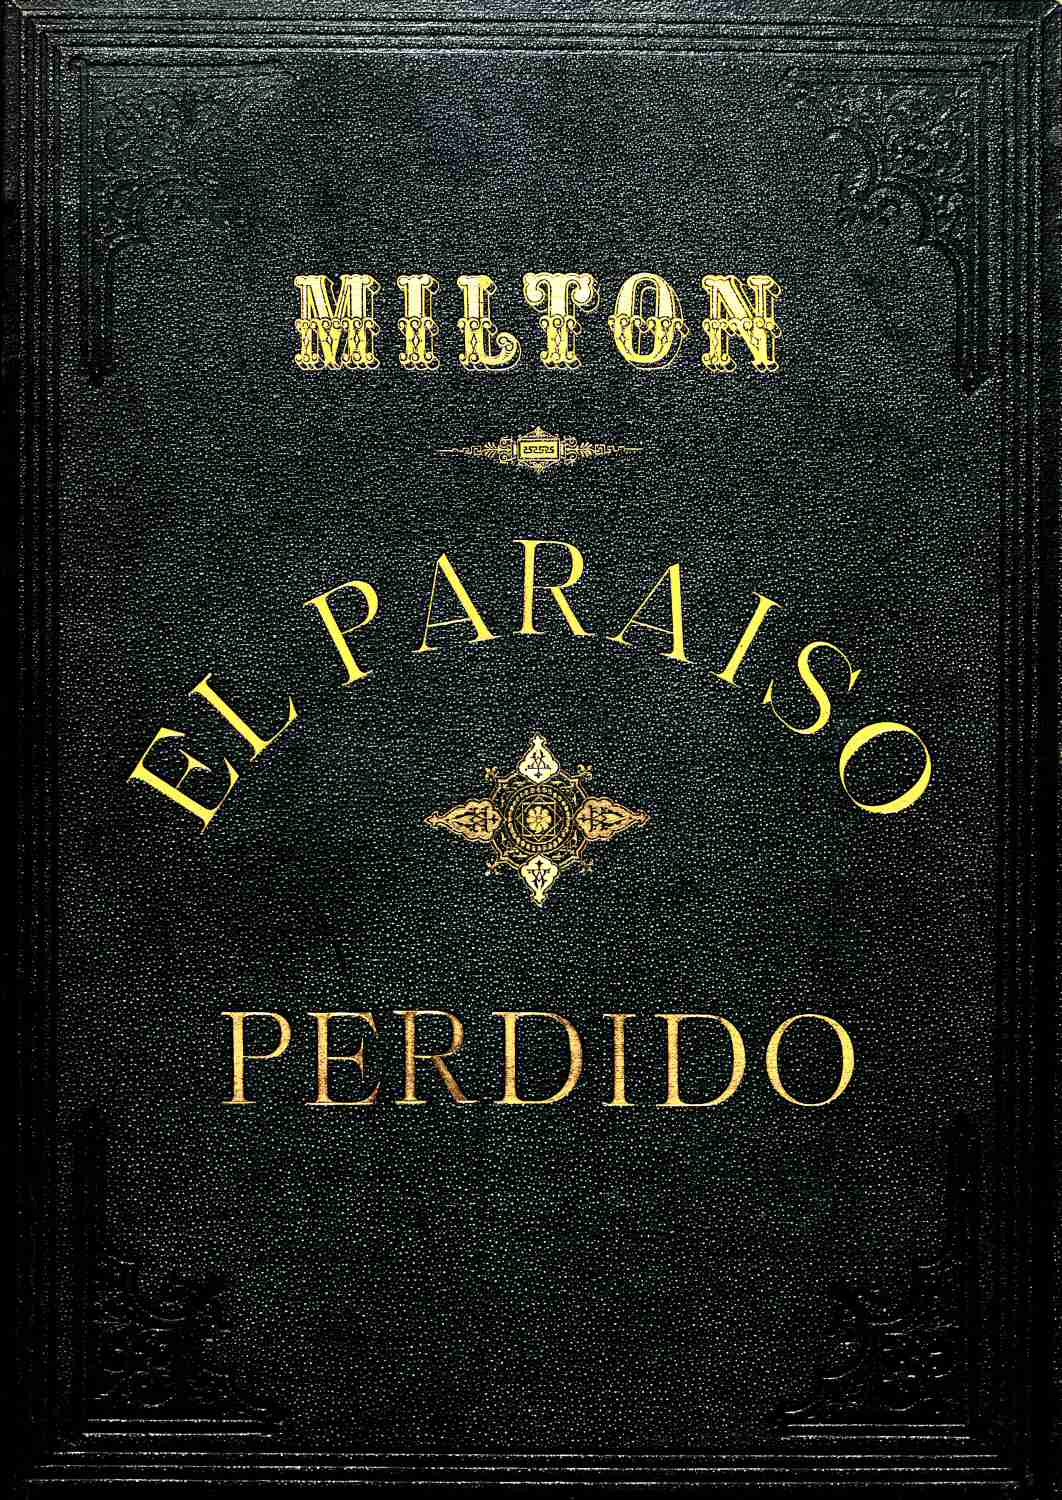 El Paraíso perdido, by John Milton—A Project Gutenberg eBook